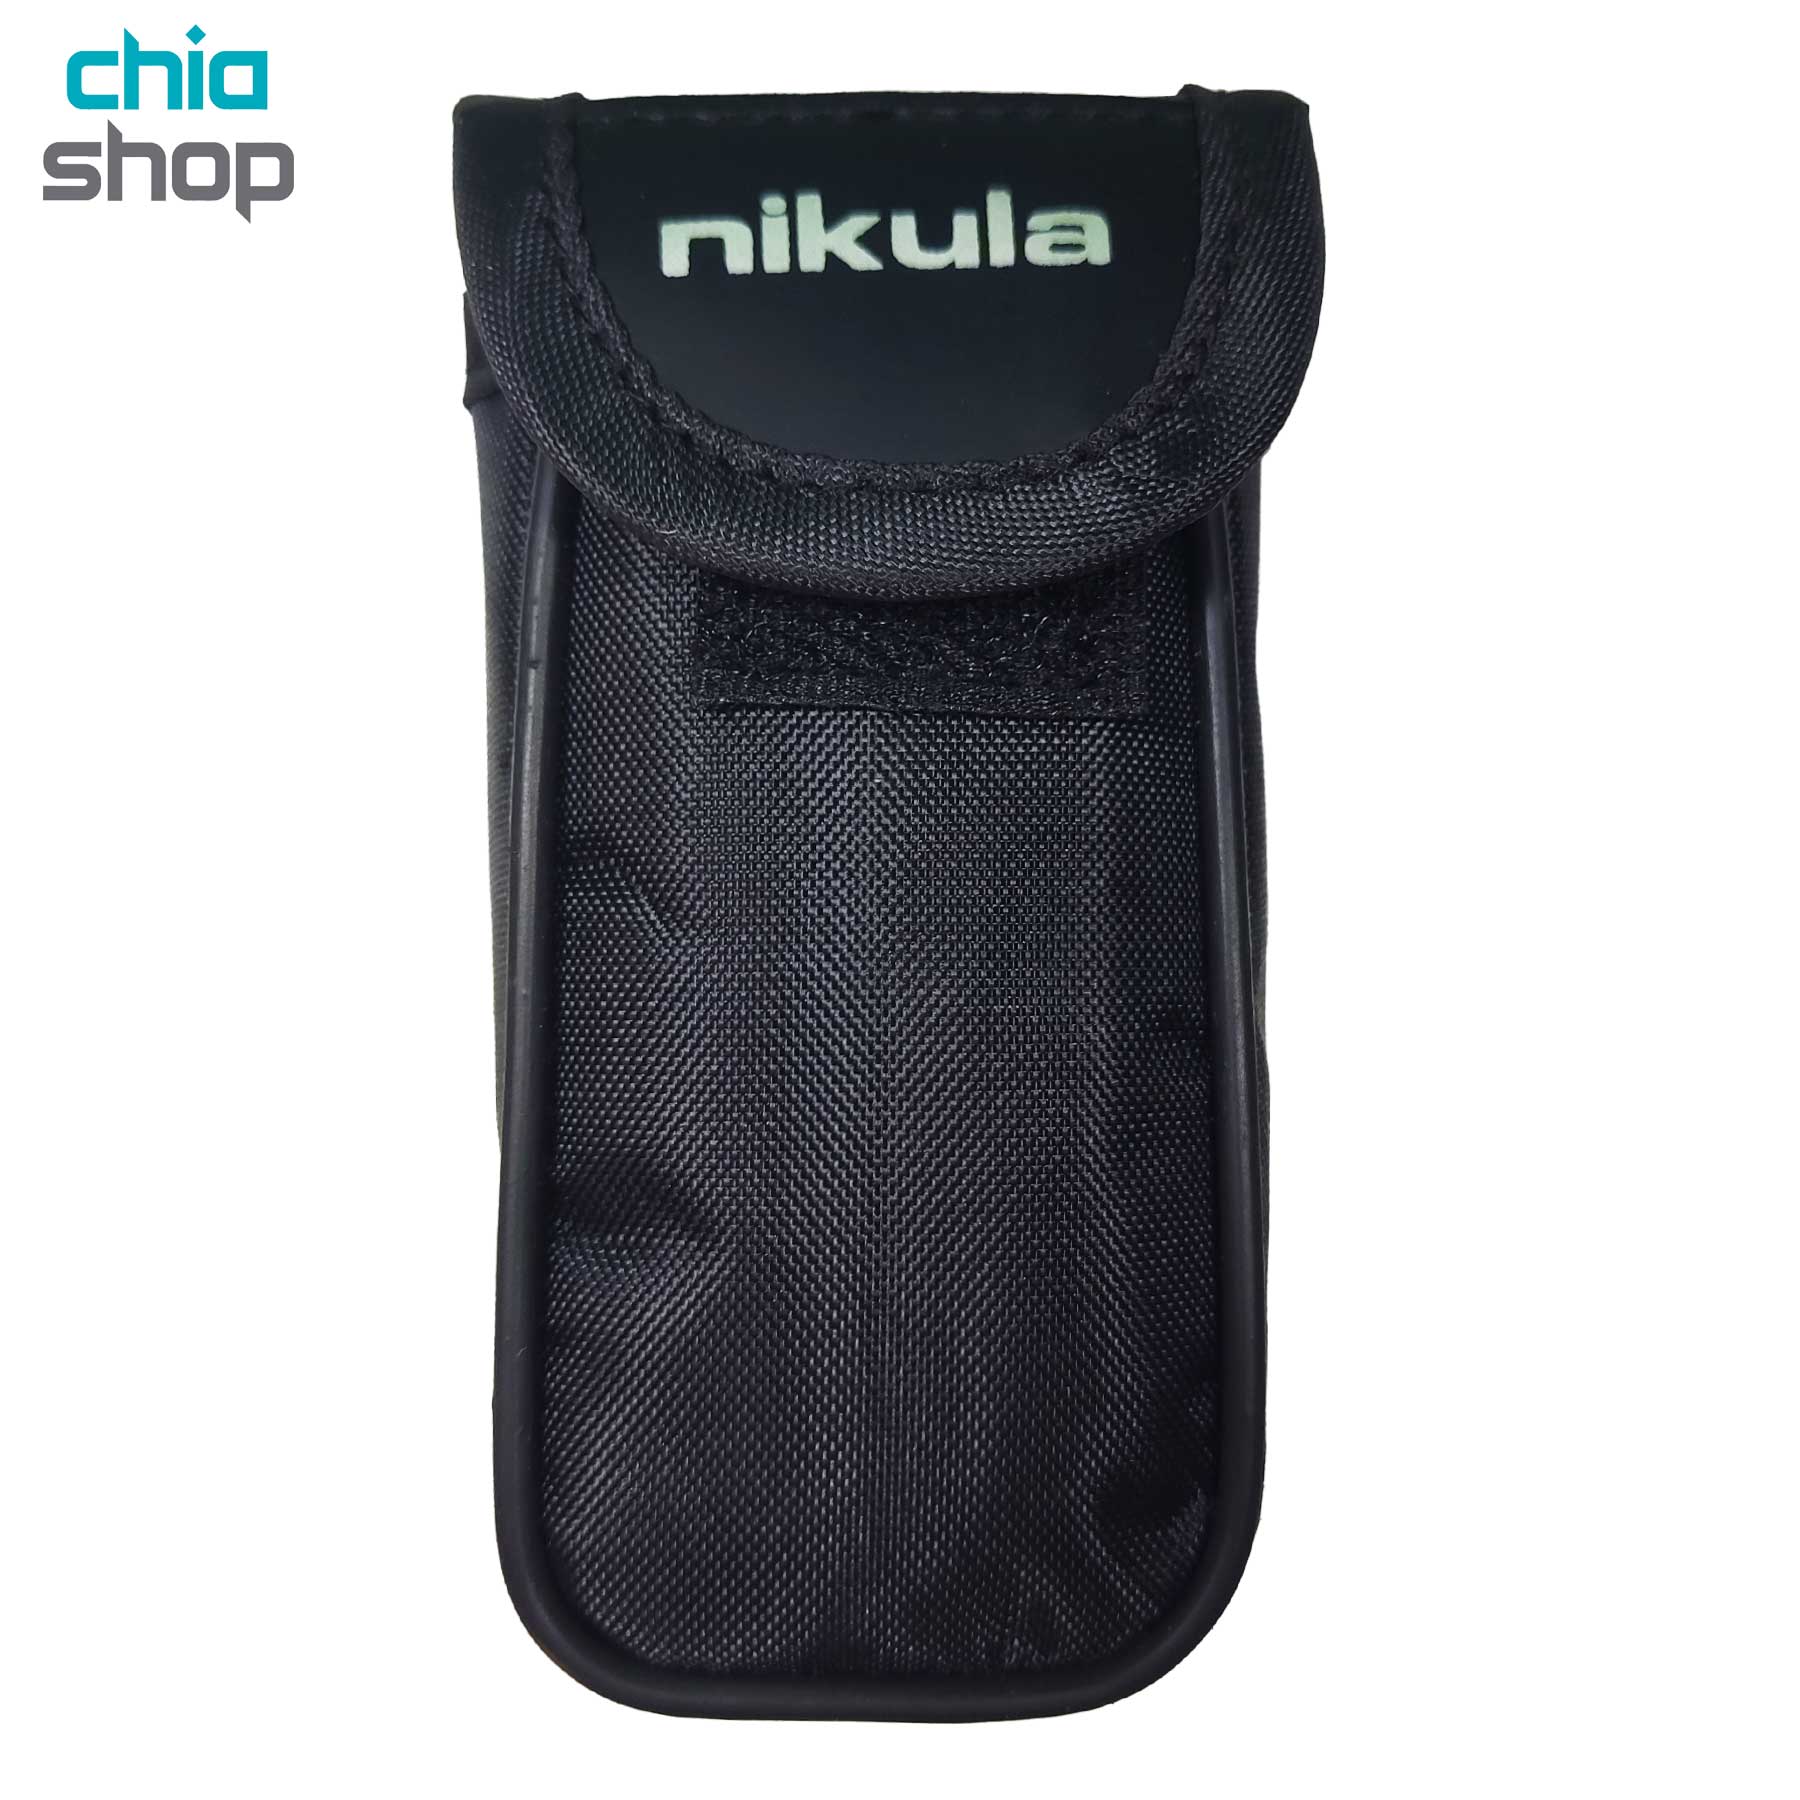 دوربین تک چشمی نیکولا مدل Nikula 7x18mm